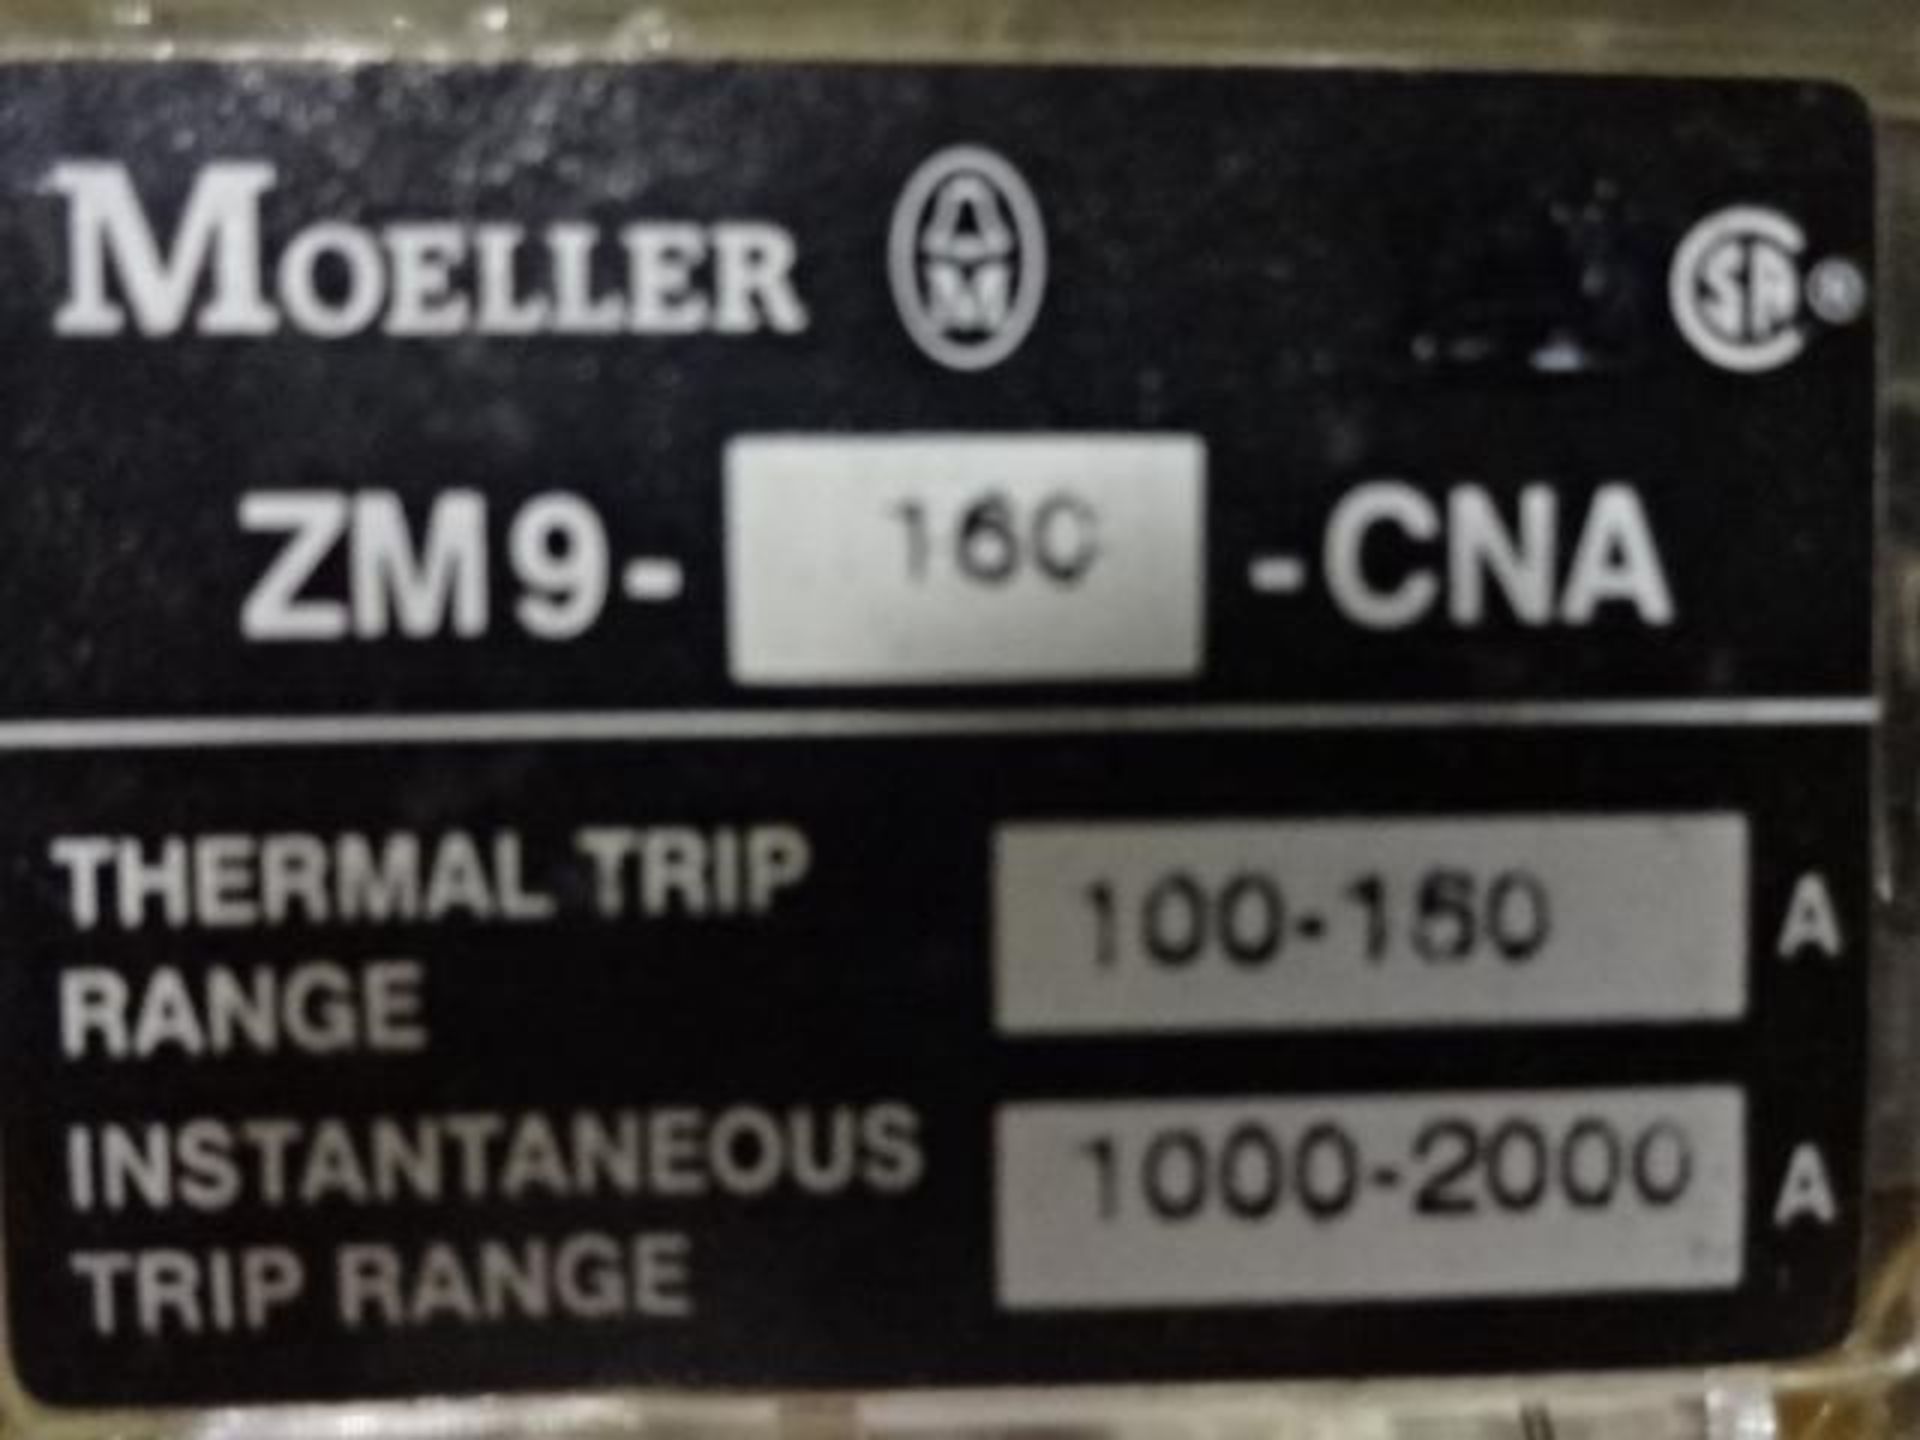 lot de 2 Moeller NZM9-250 Circuit Breaker - lot of 2 Moeller NZM9-250 Circuit Breaker - Image 2 of 3